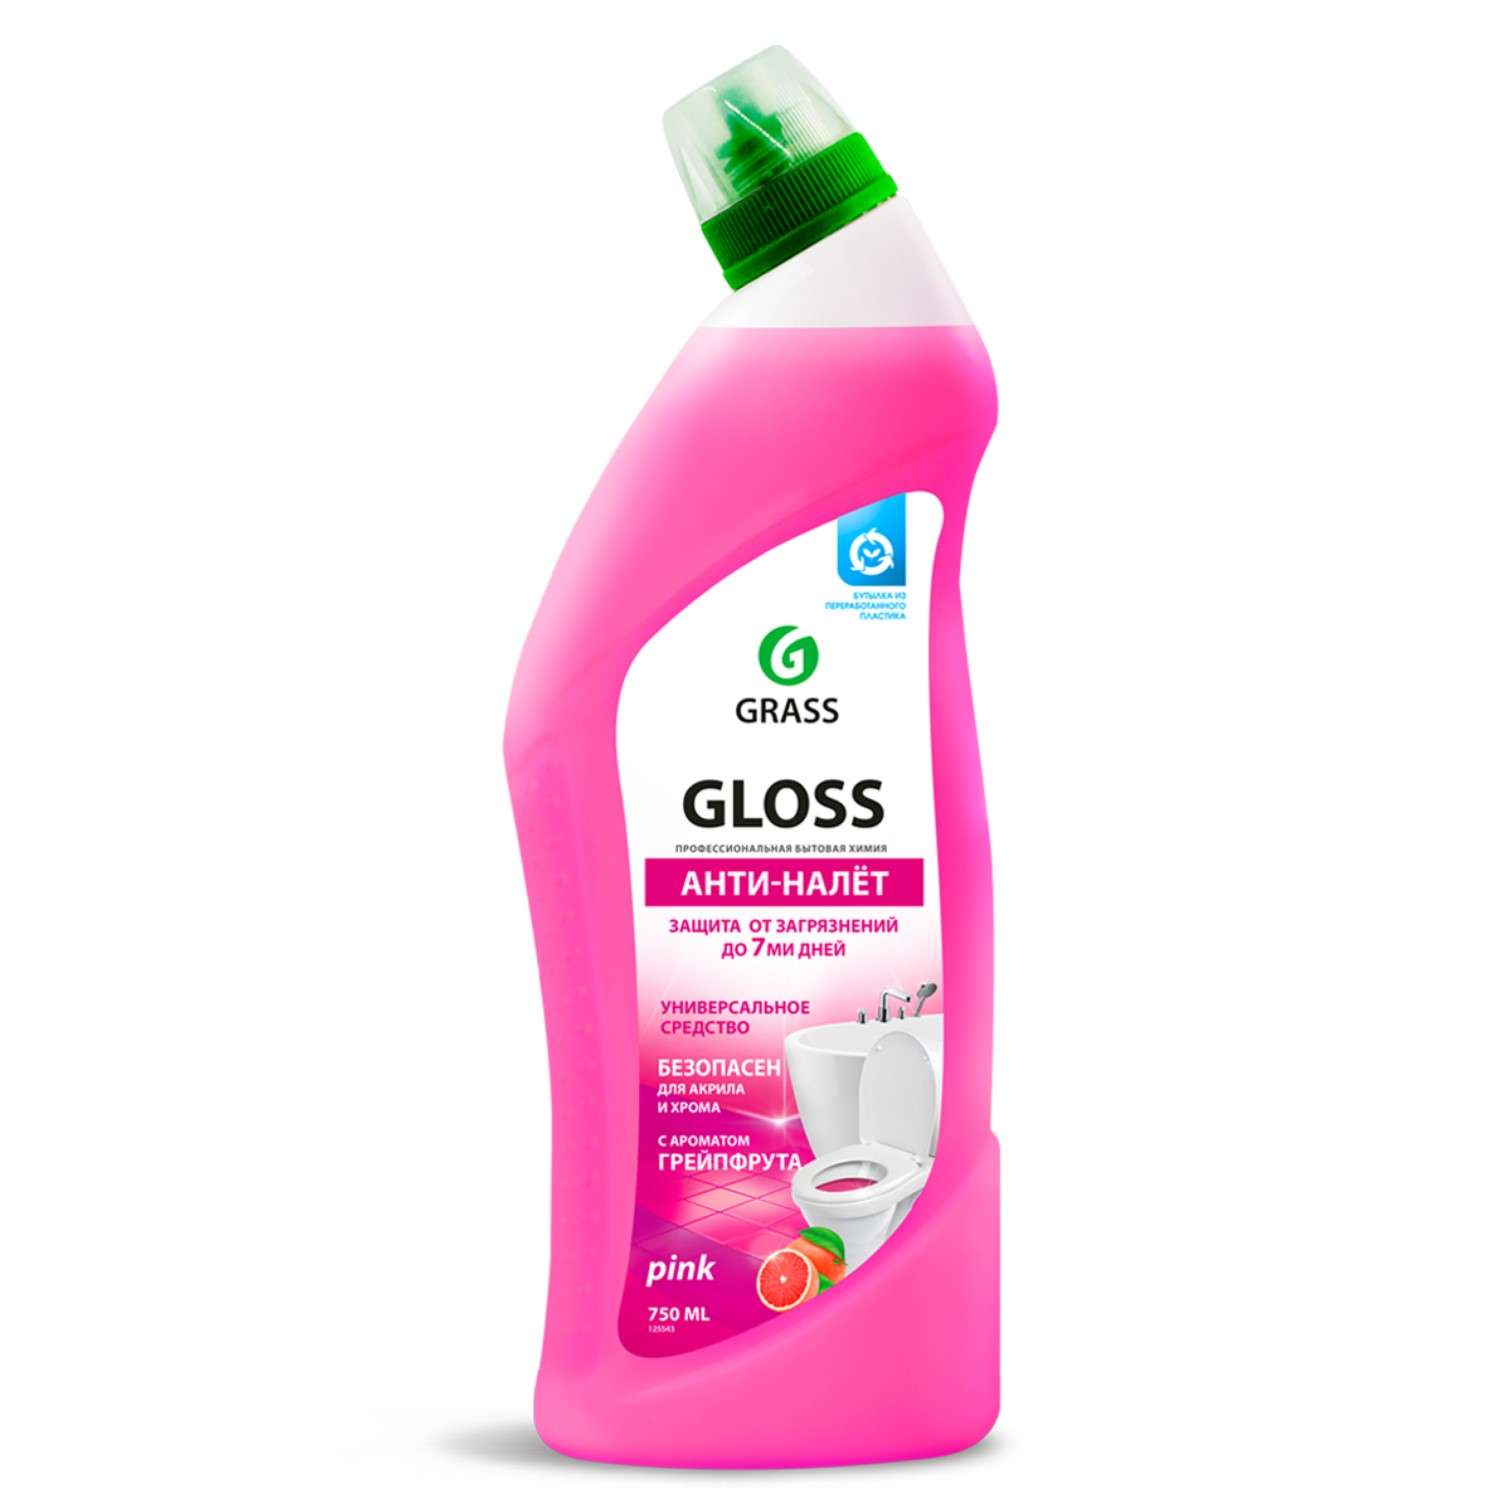 Чистящее средство GraSS Gloss pink для санузлов 750 мл - фото 1